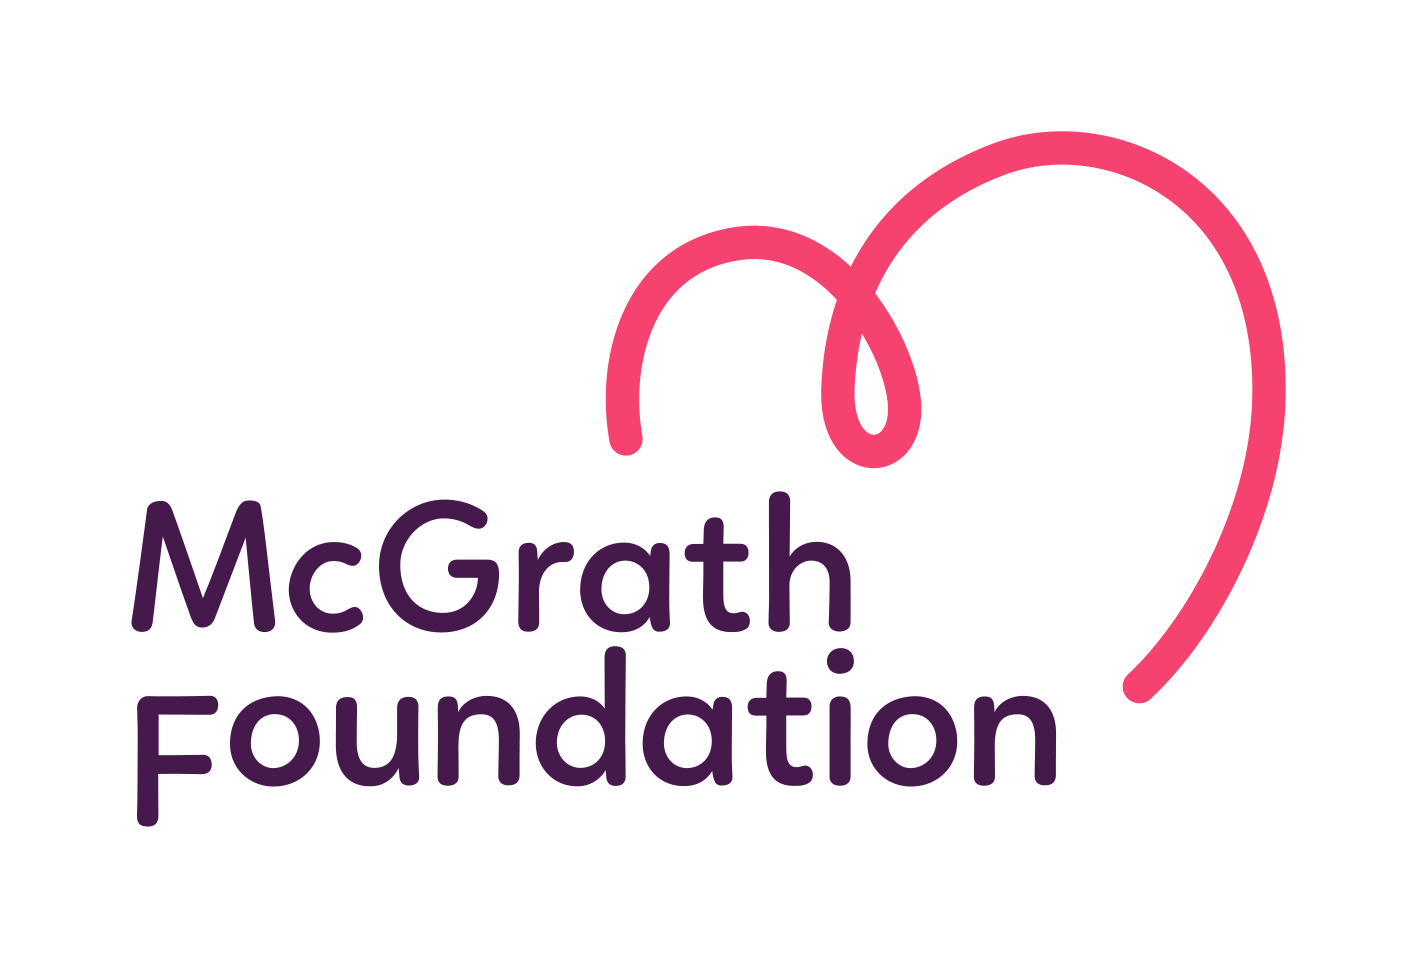 McGrath Foundation